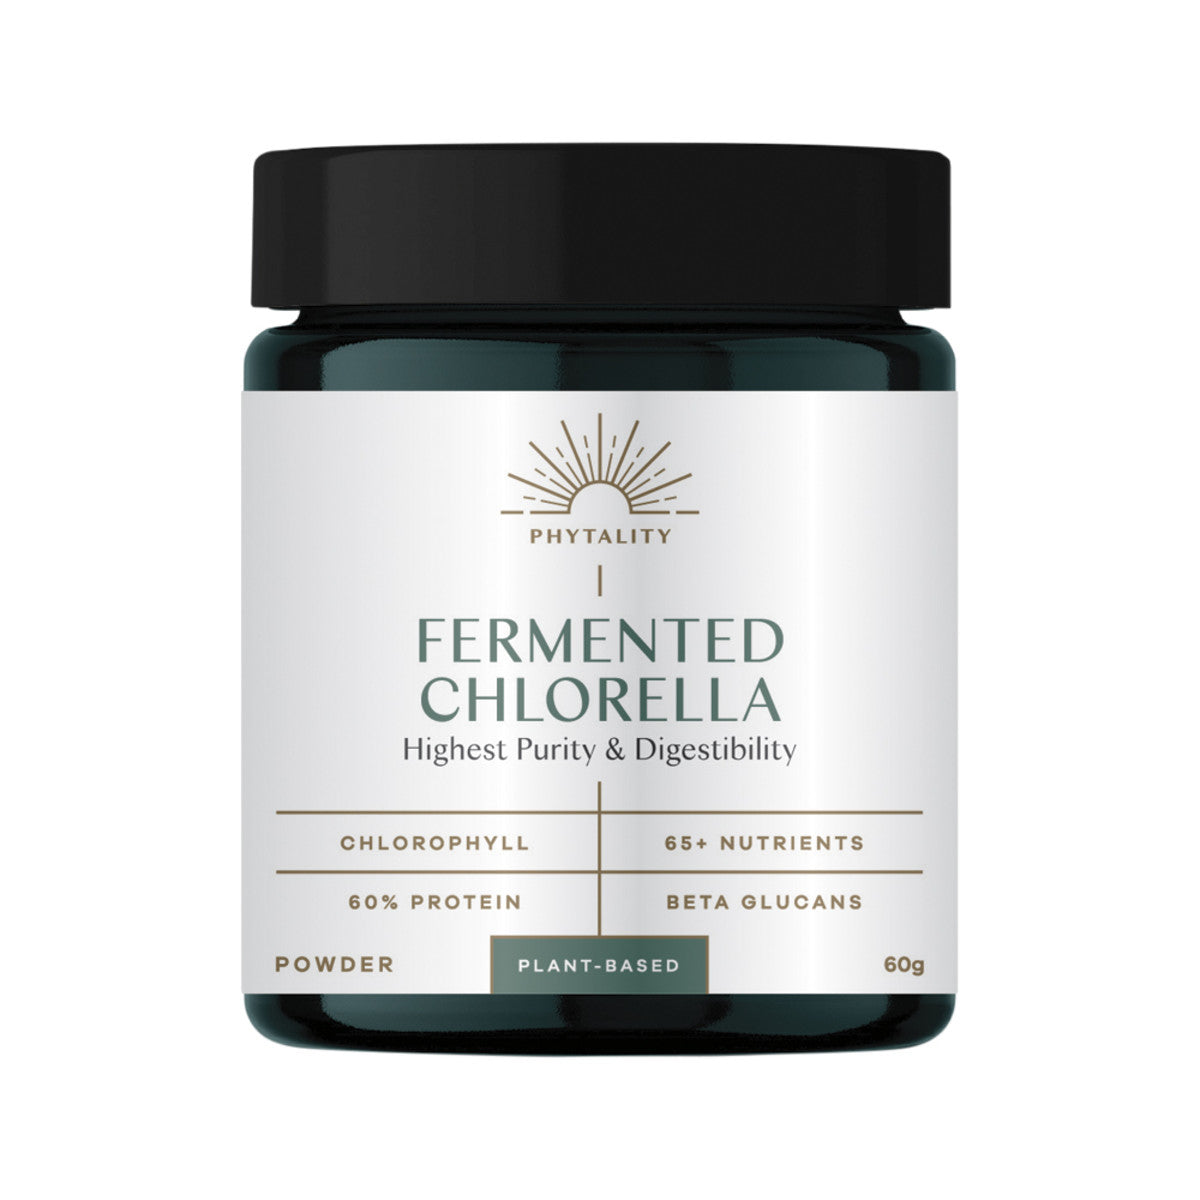 Phytality Fermented Chlorella